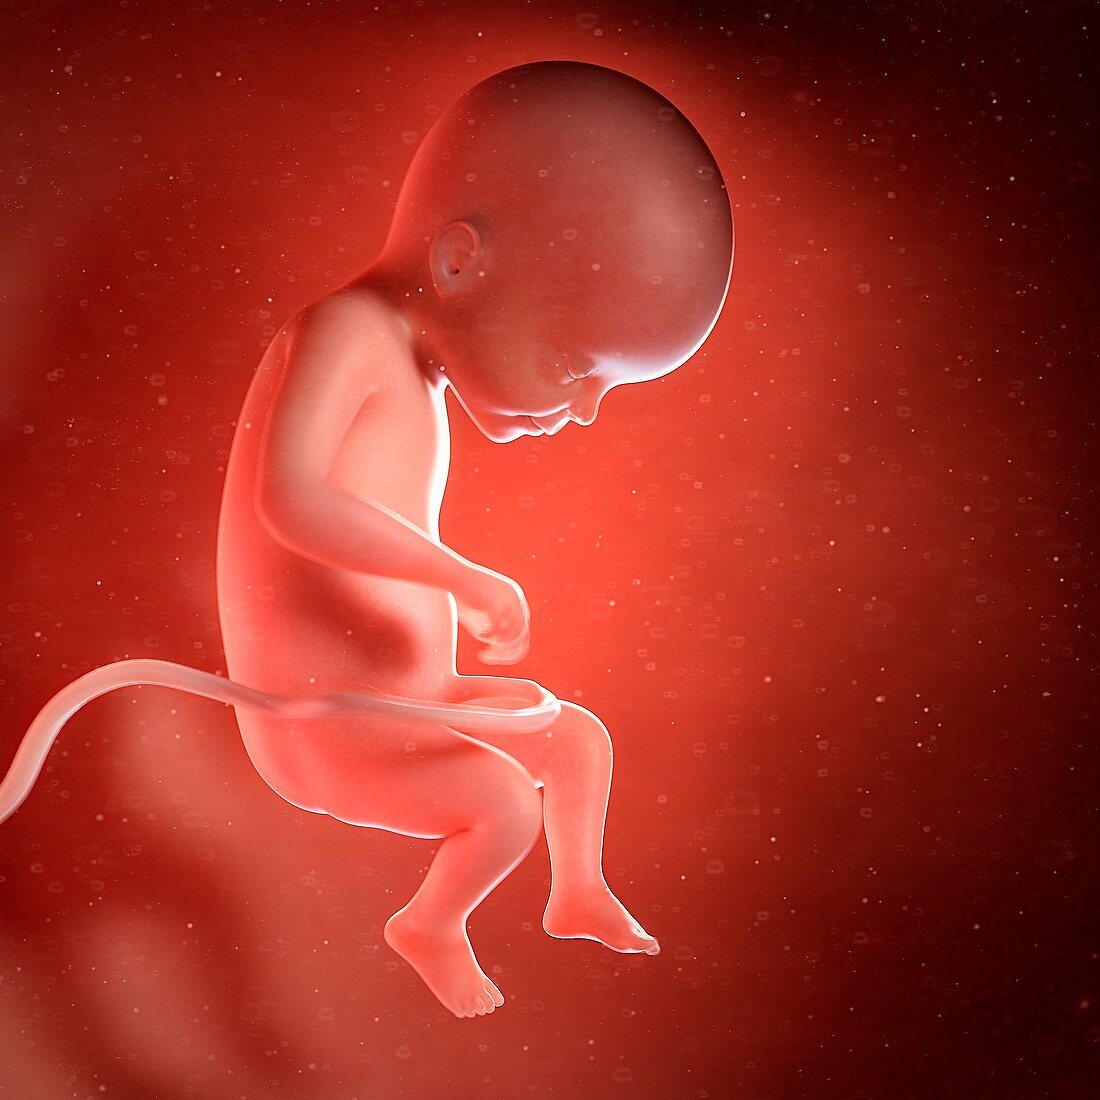 Human foetus age 22 weeks, illustration